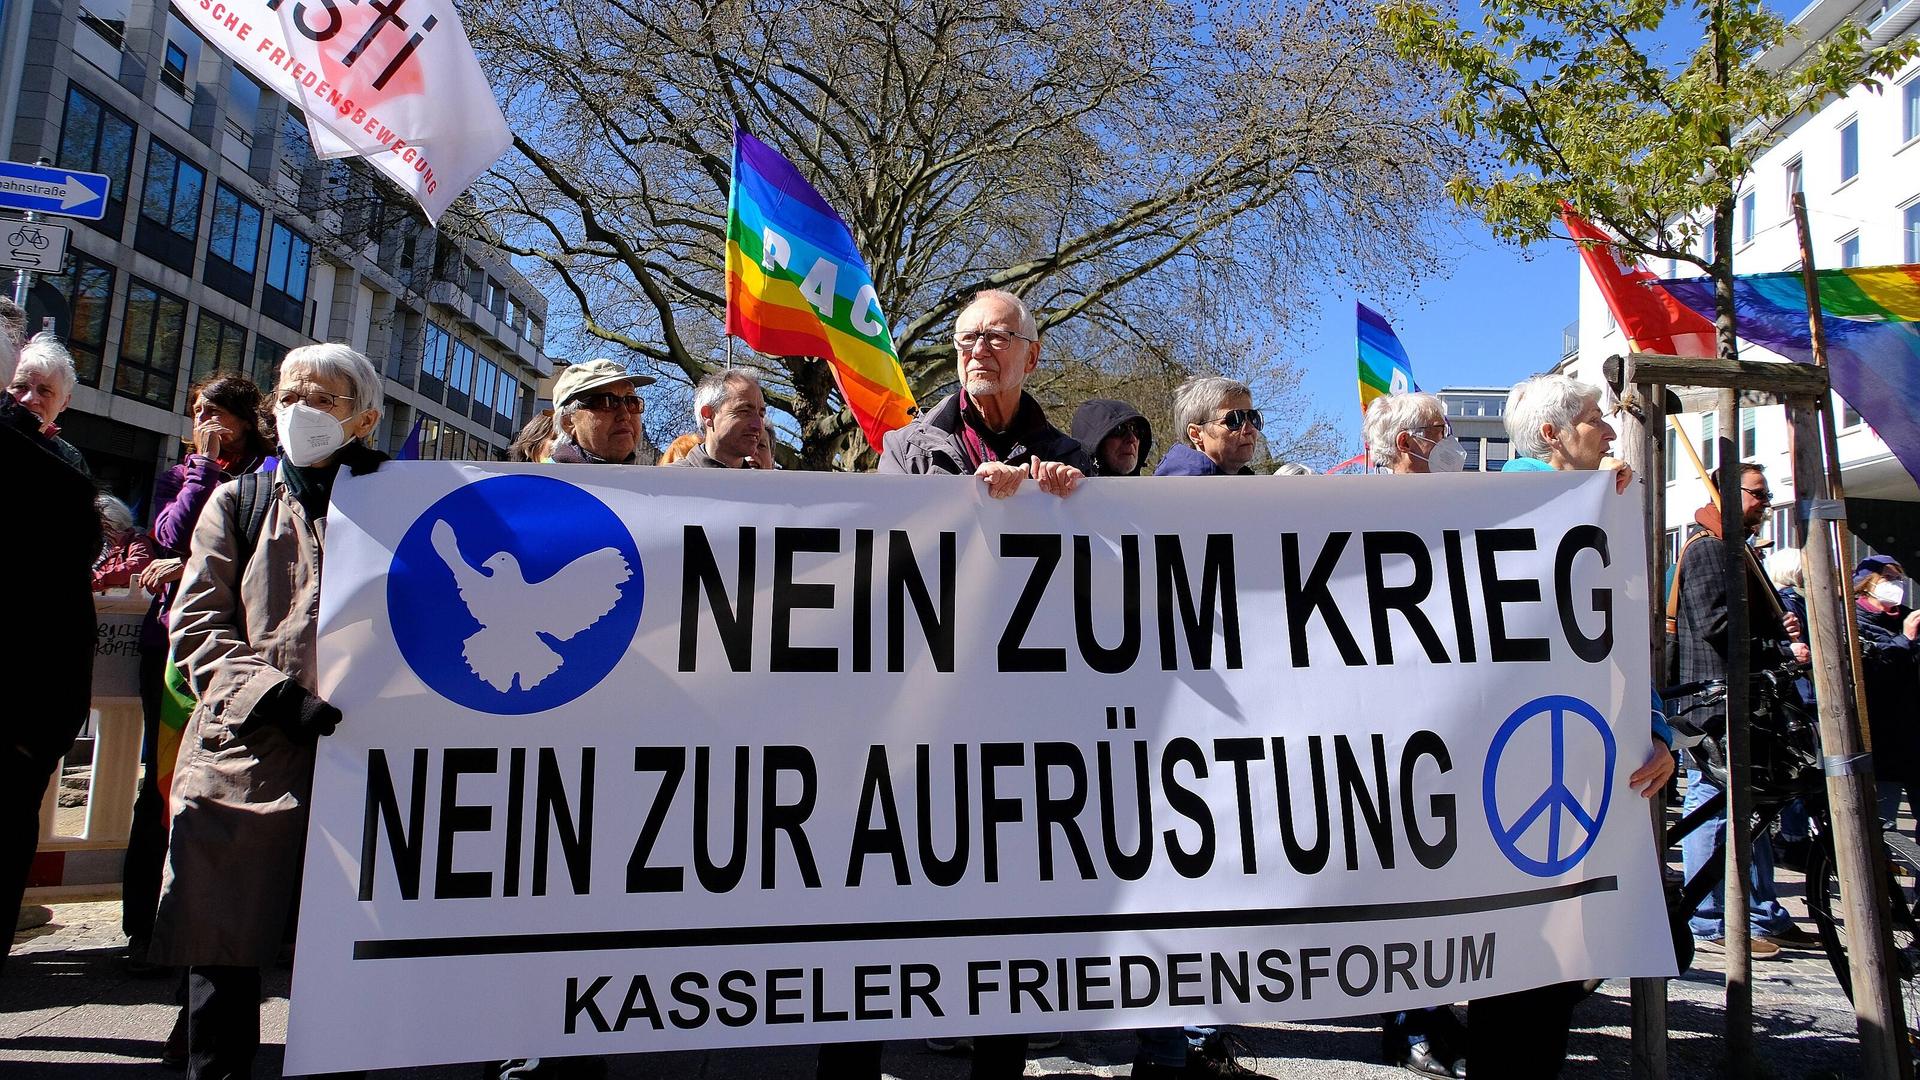 Menschen tragen auf einer Straße ein Banner mit der Aufschrift "Nein zum Krieg - Nein zur Aufrüstung". Außerdem ist eine LGBTQ-Fahne zu sehen.